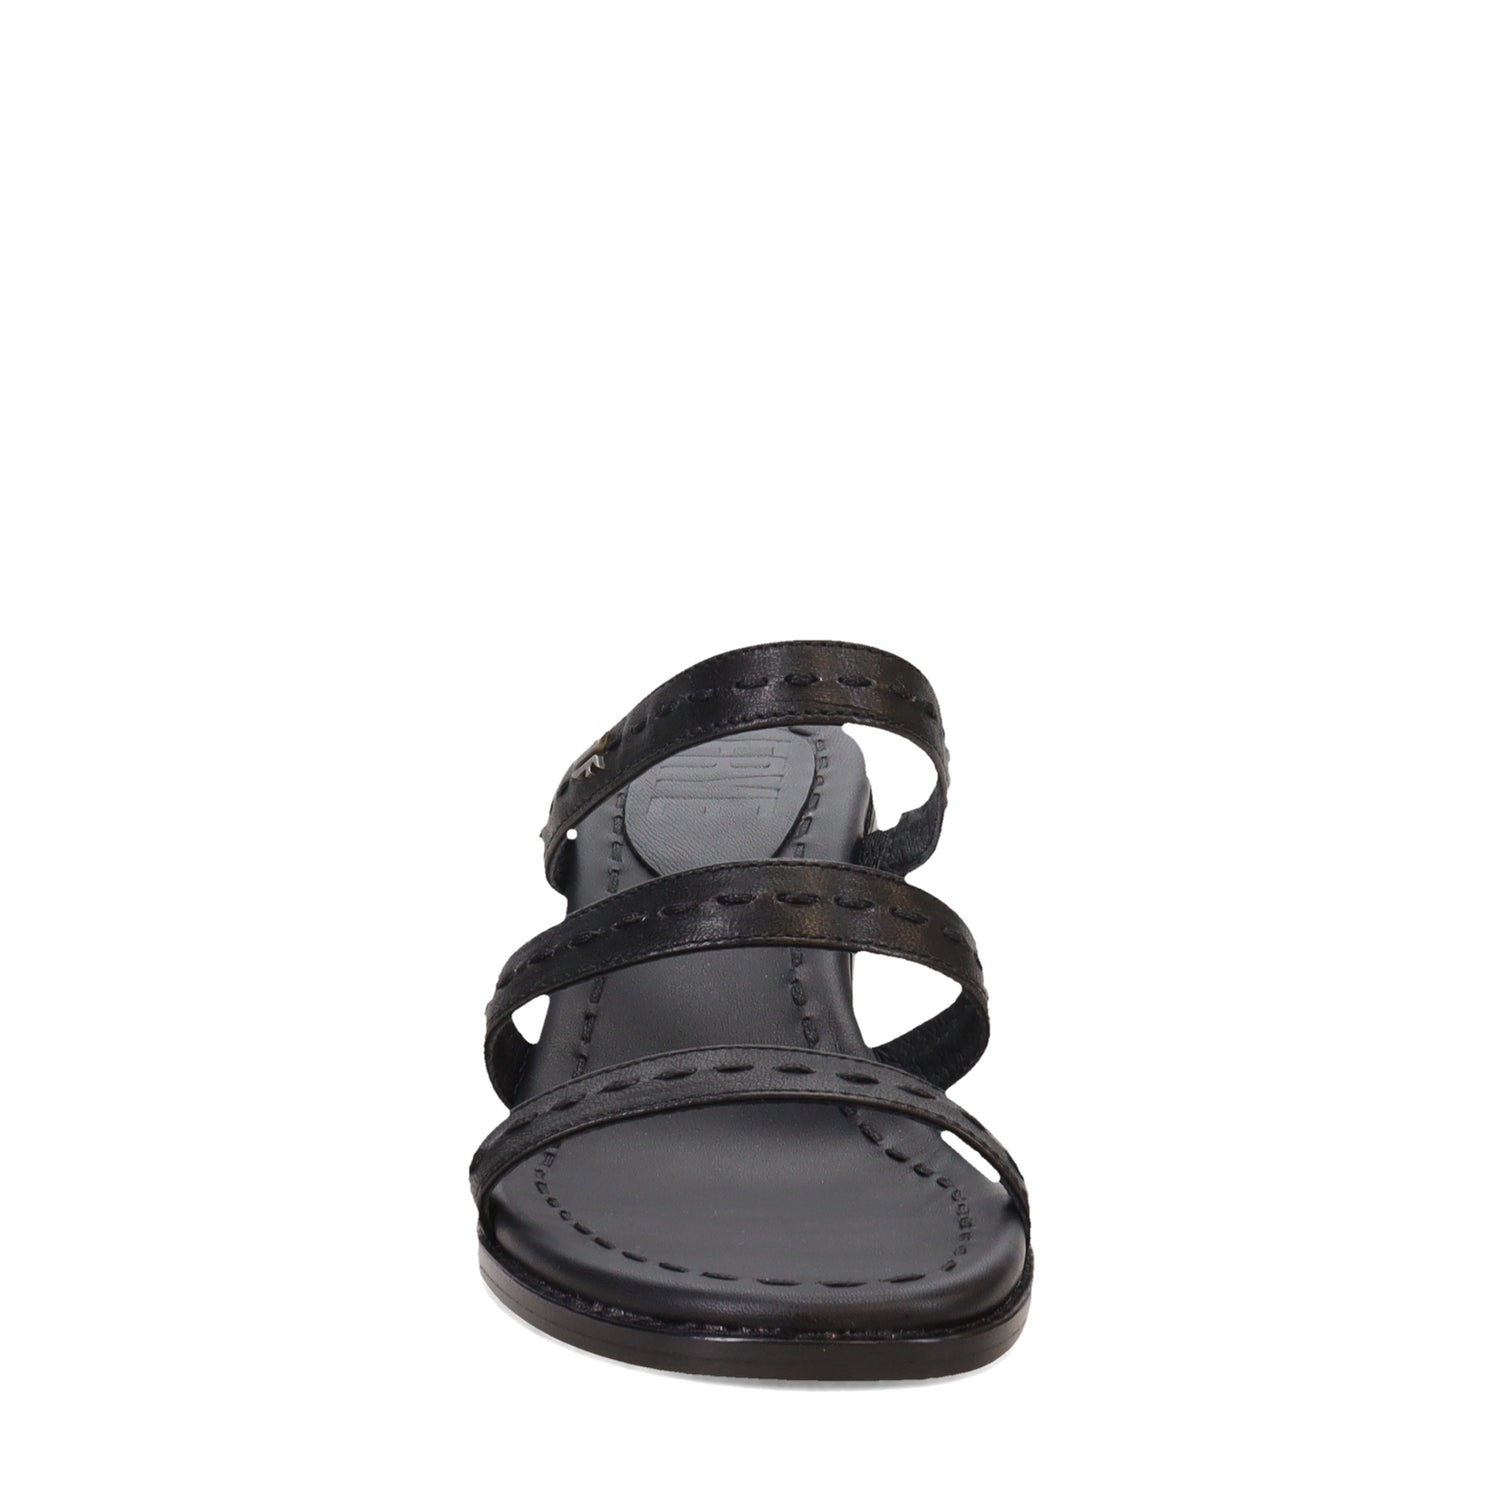 Peltz Shoes  Women's Frye Estelle Strappy Sandal BLACK FR40337-BLAC